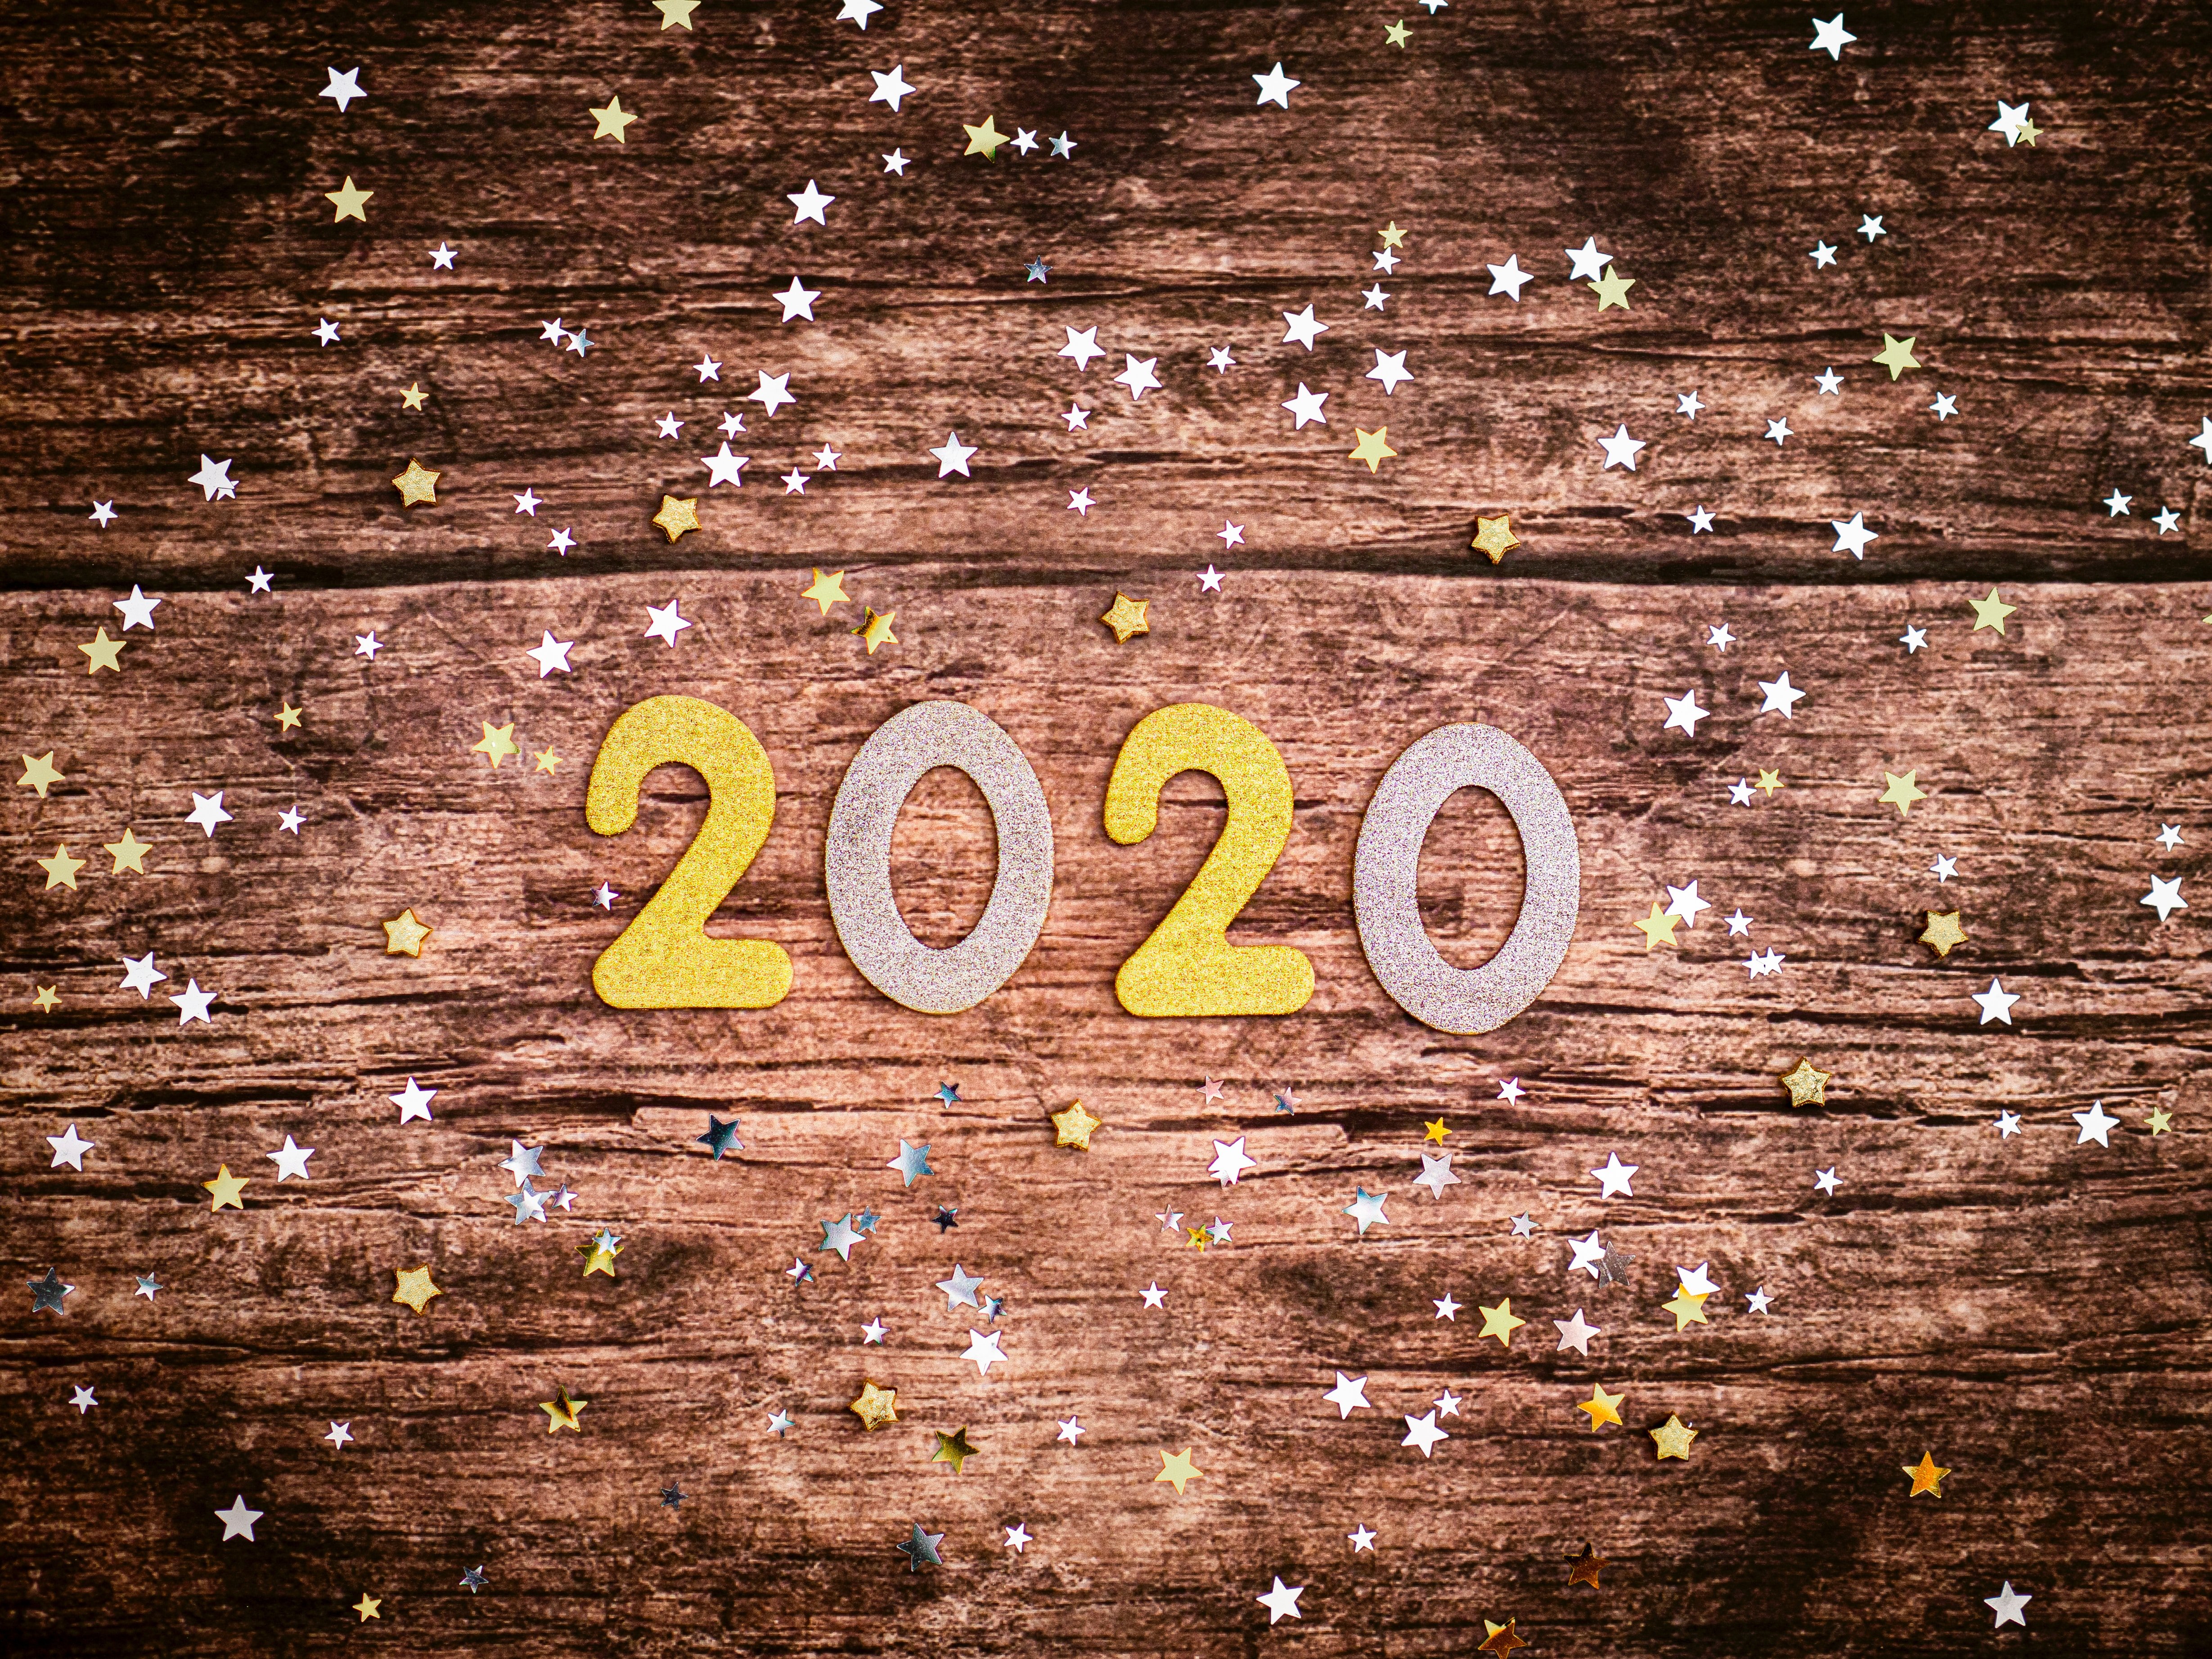 La salud entre los propósitos de 2020